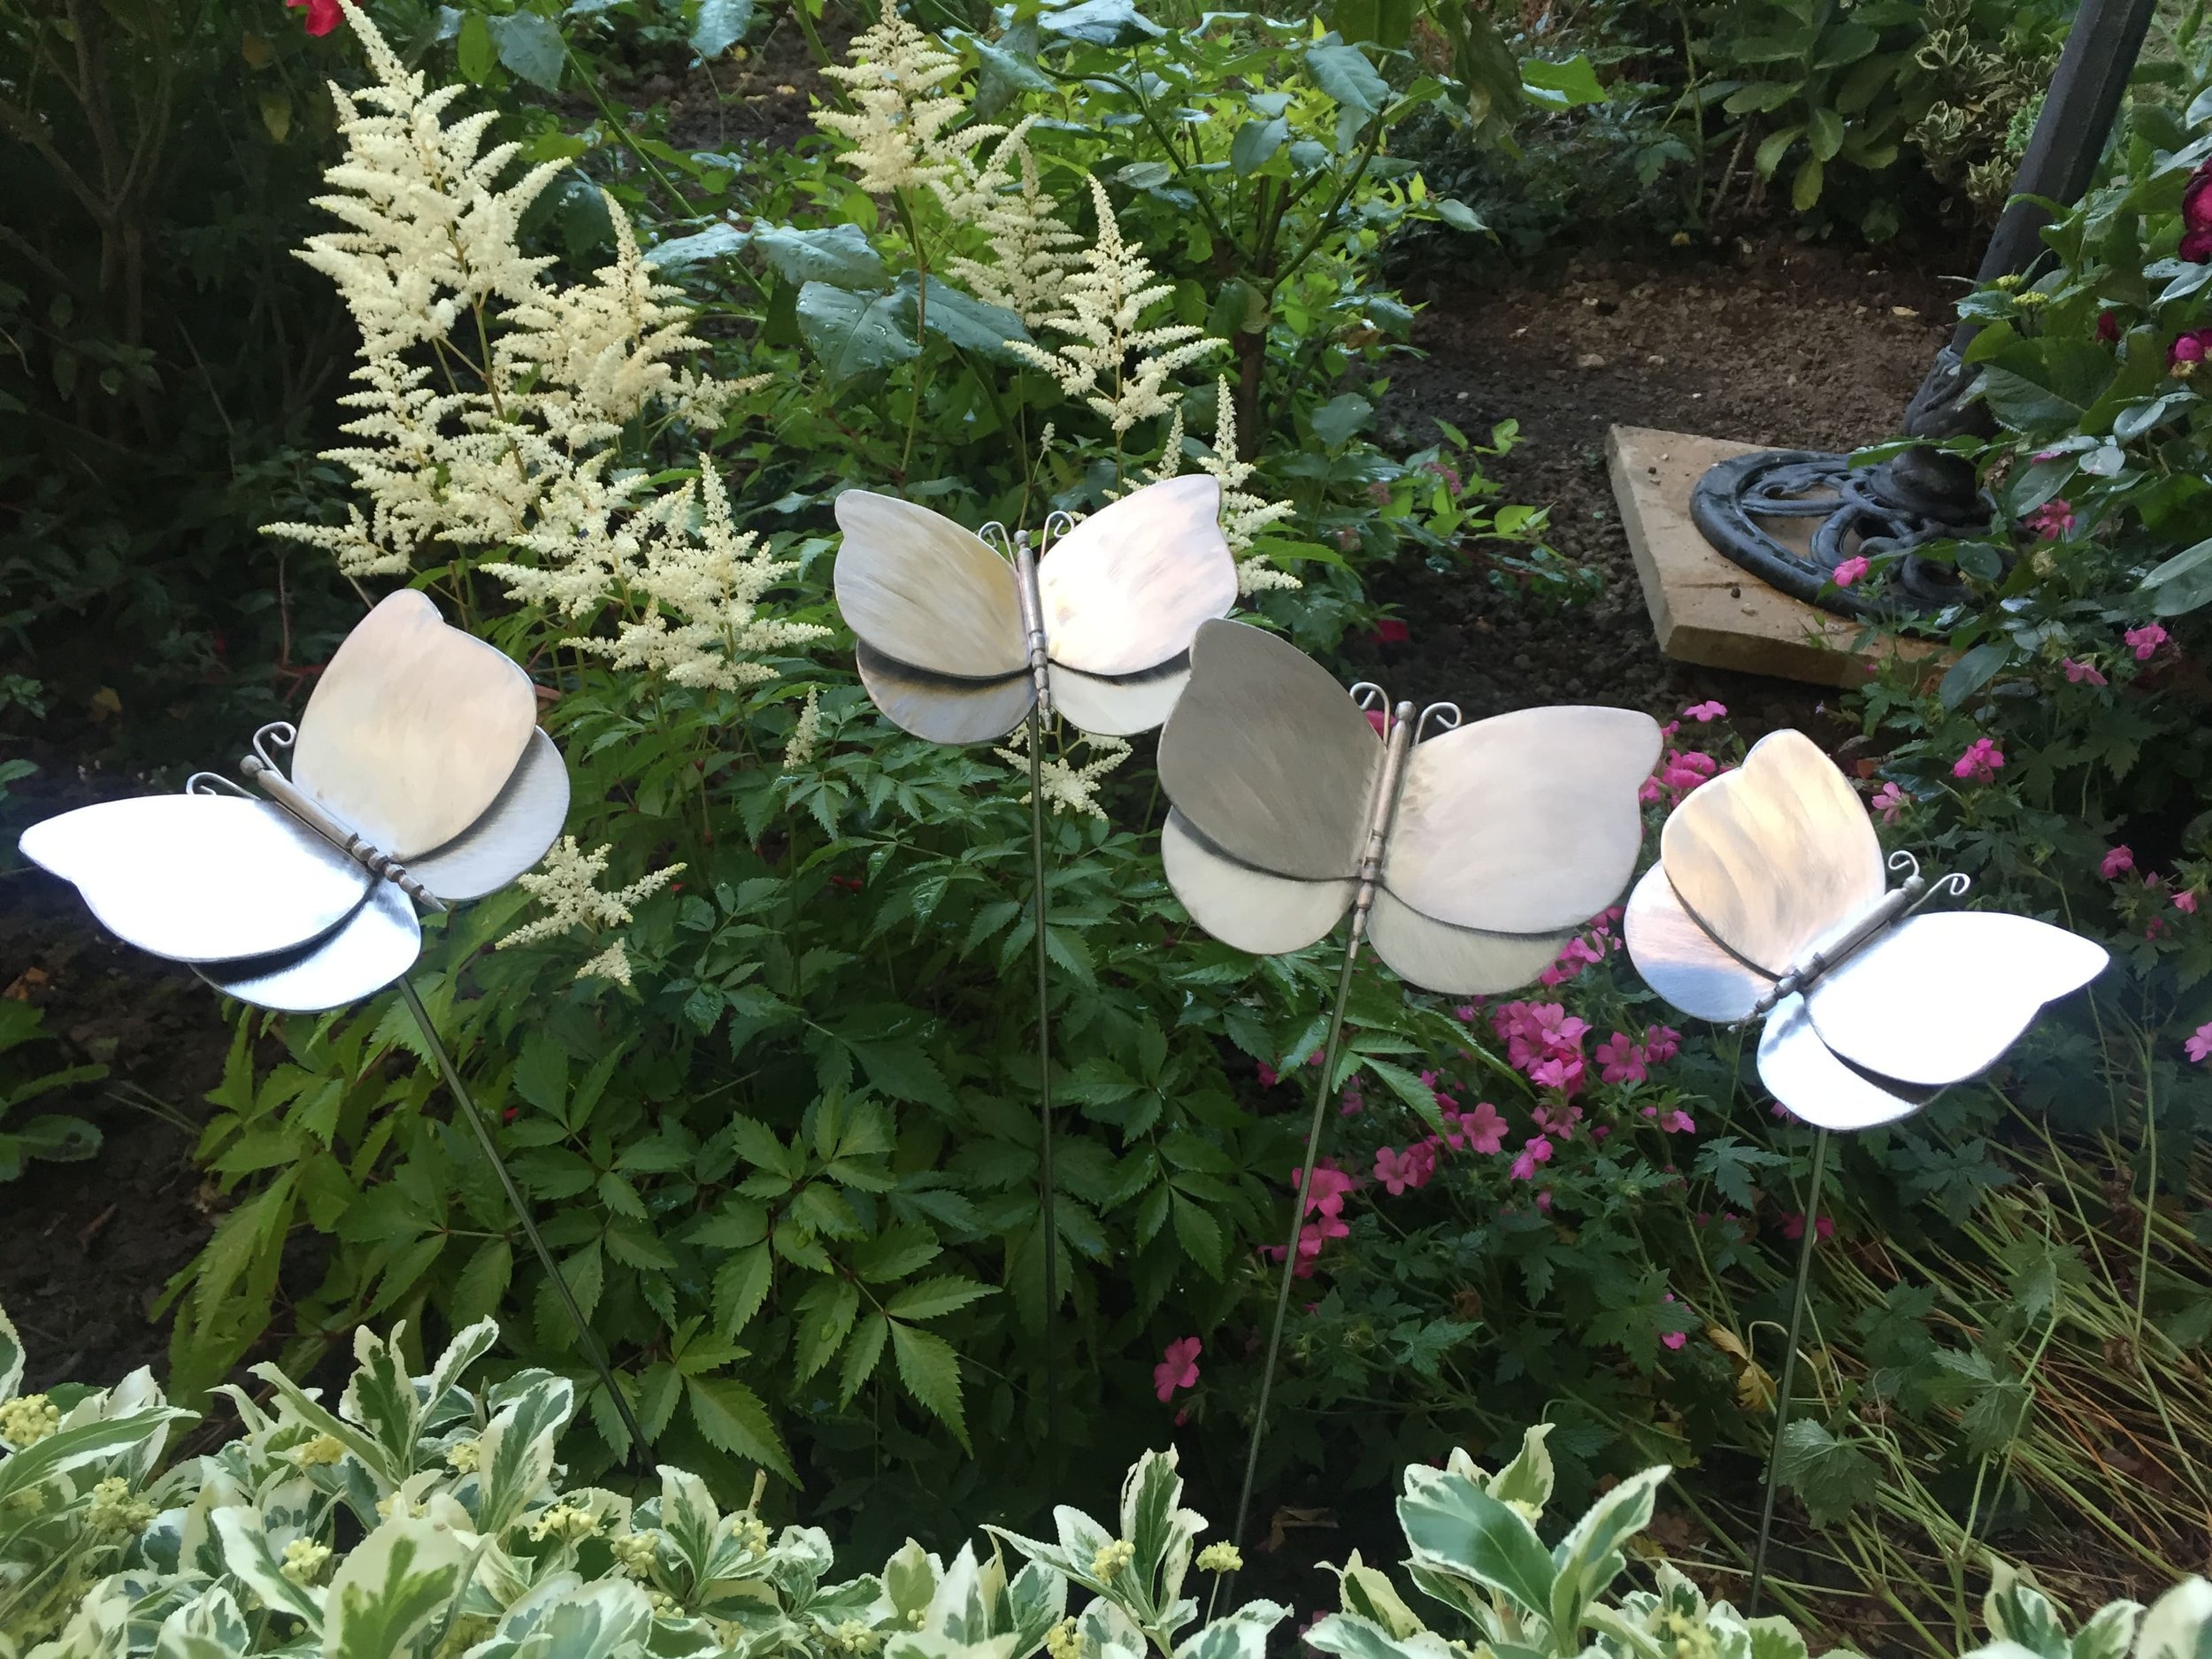 butterflies-stainless-steel-garden-sculpture-4.JPG